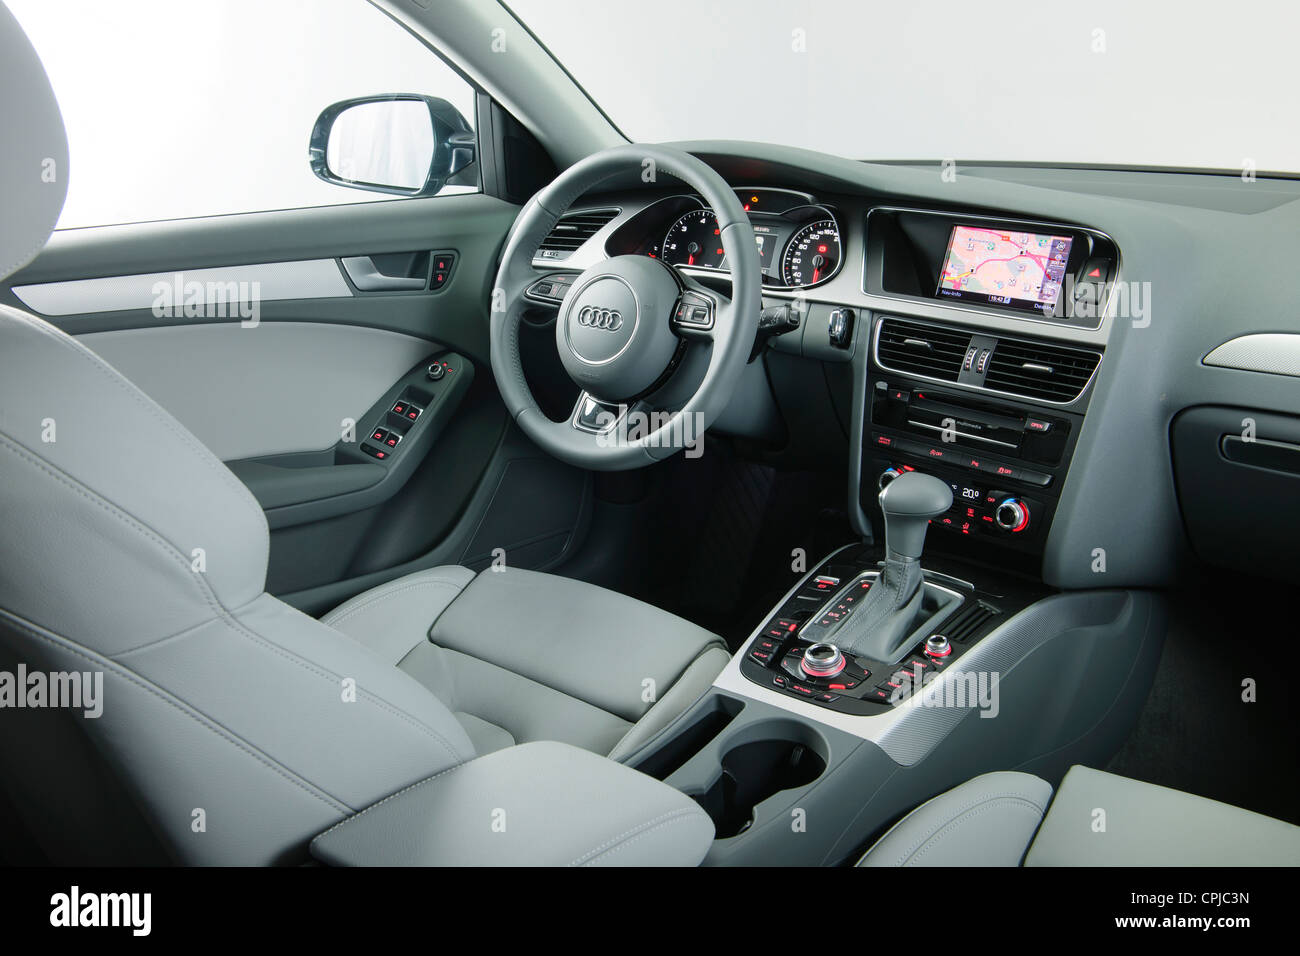 Audi A4 Innenaufnahme im studio Stockfotografie - Alamy